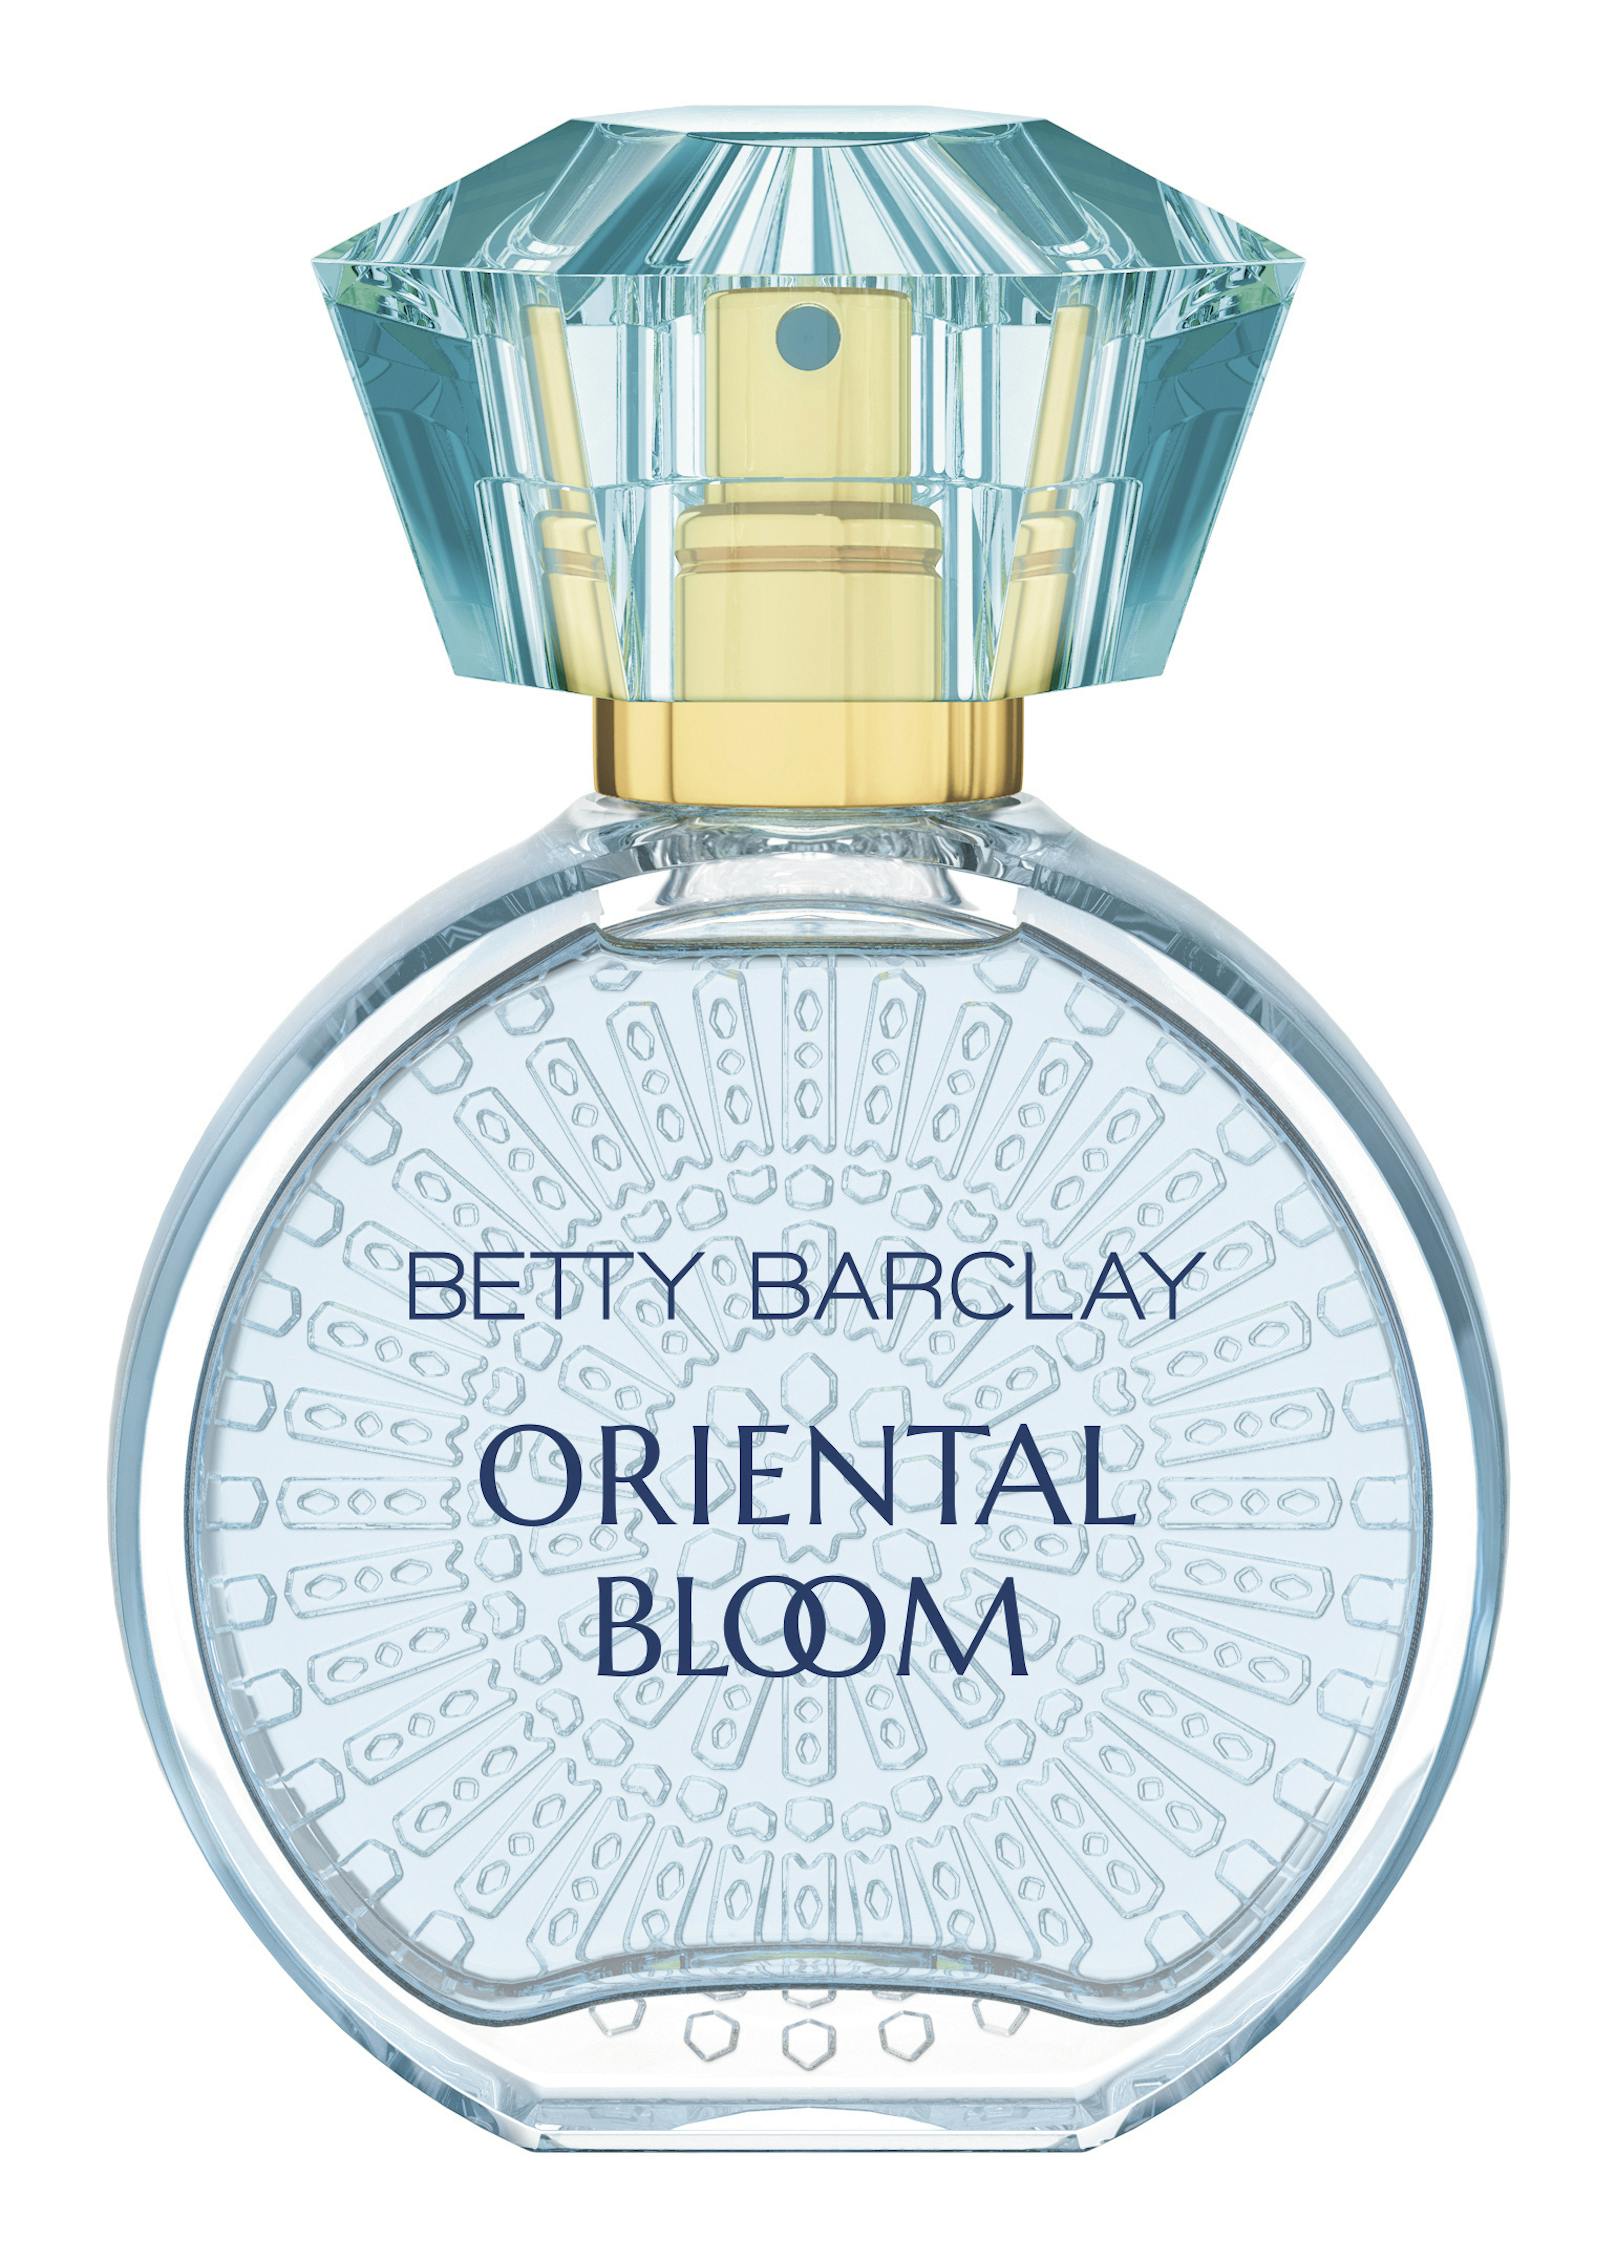 Brine, Jasmin, Vanille und Moschus in<strong> "Oriental Bloom" von Betty Barclay</strong> lassen das Herz höher pochen.&nbsp;Eau de Parfum um 21,75 Euro.